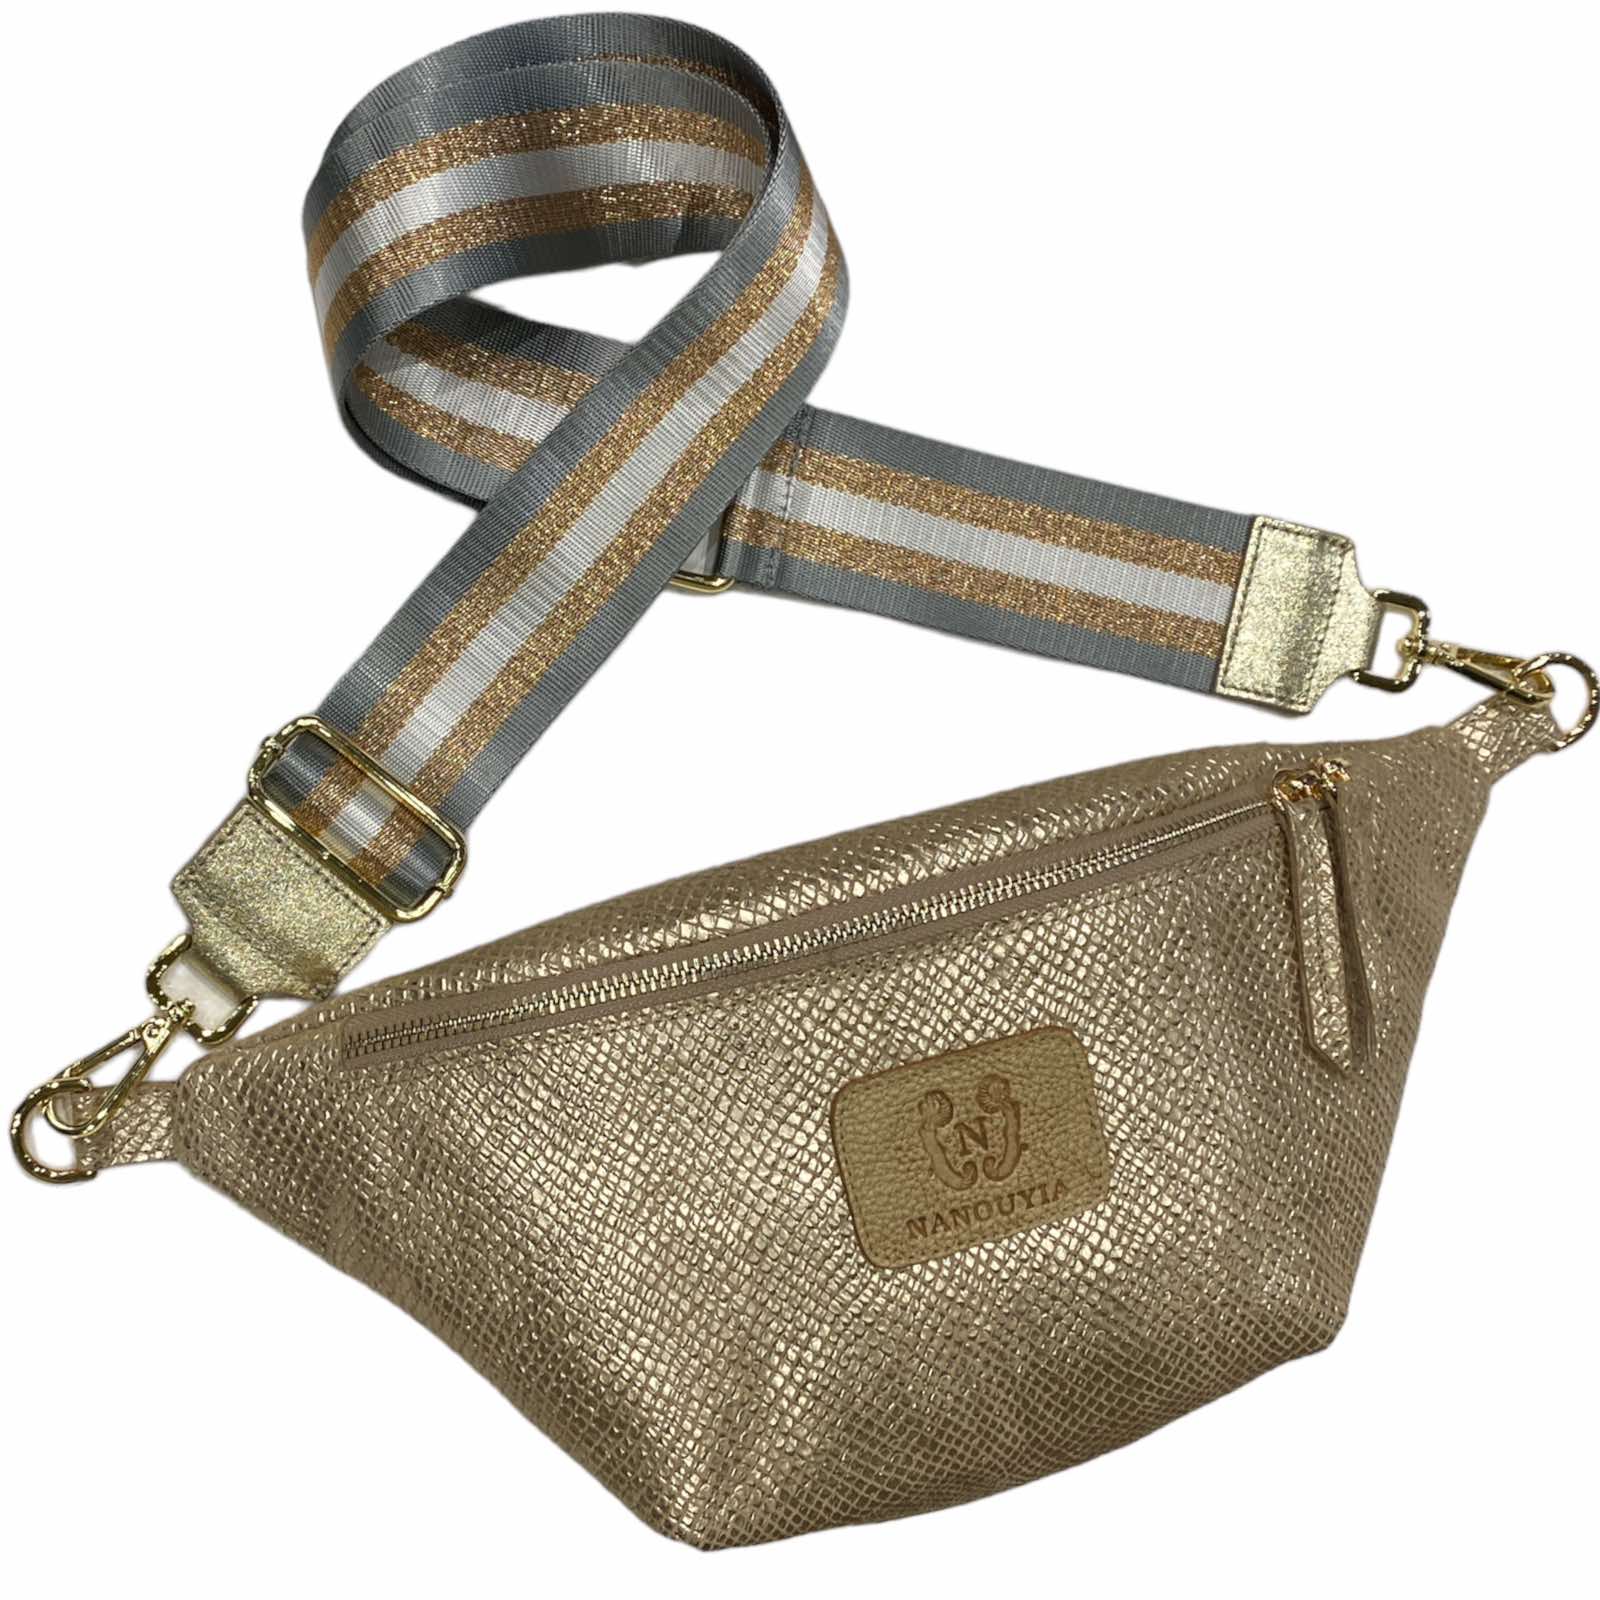 Antico gold leather belt bag